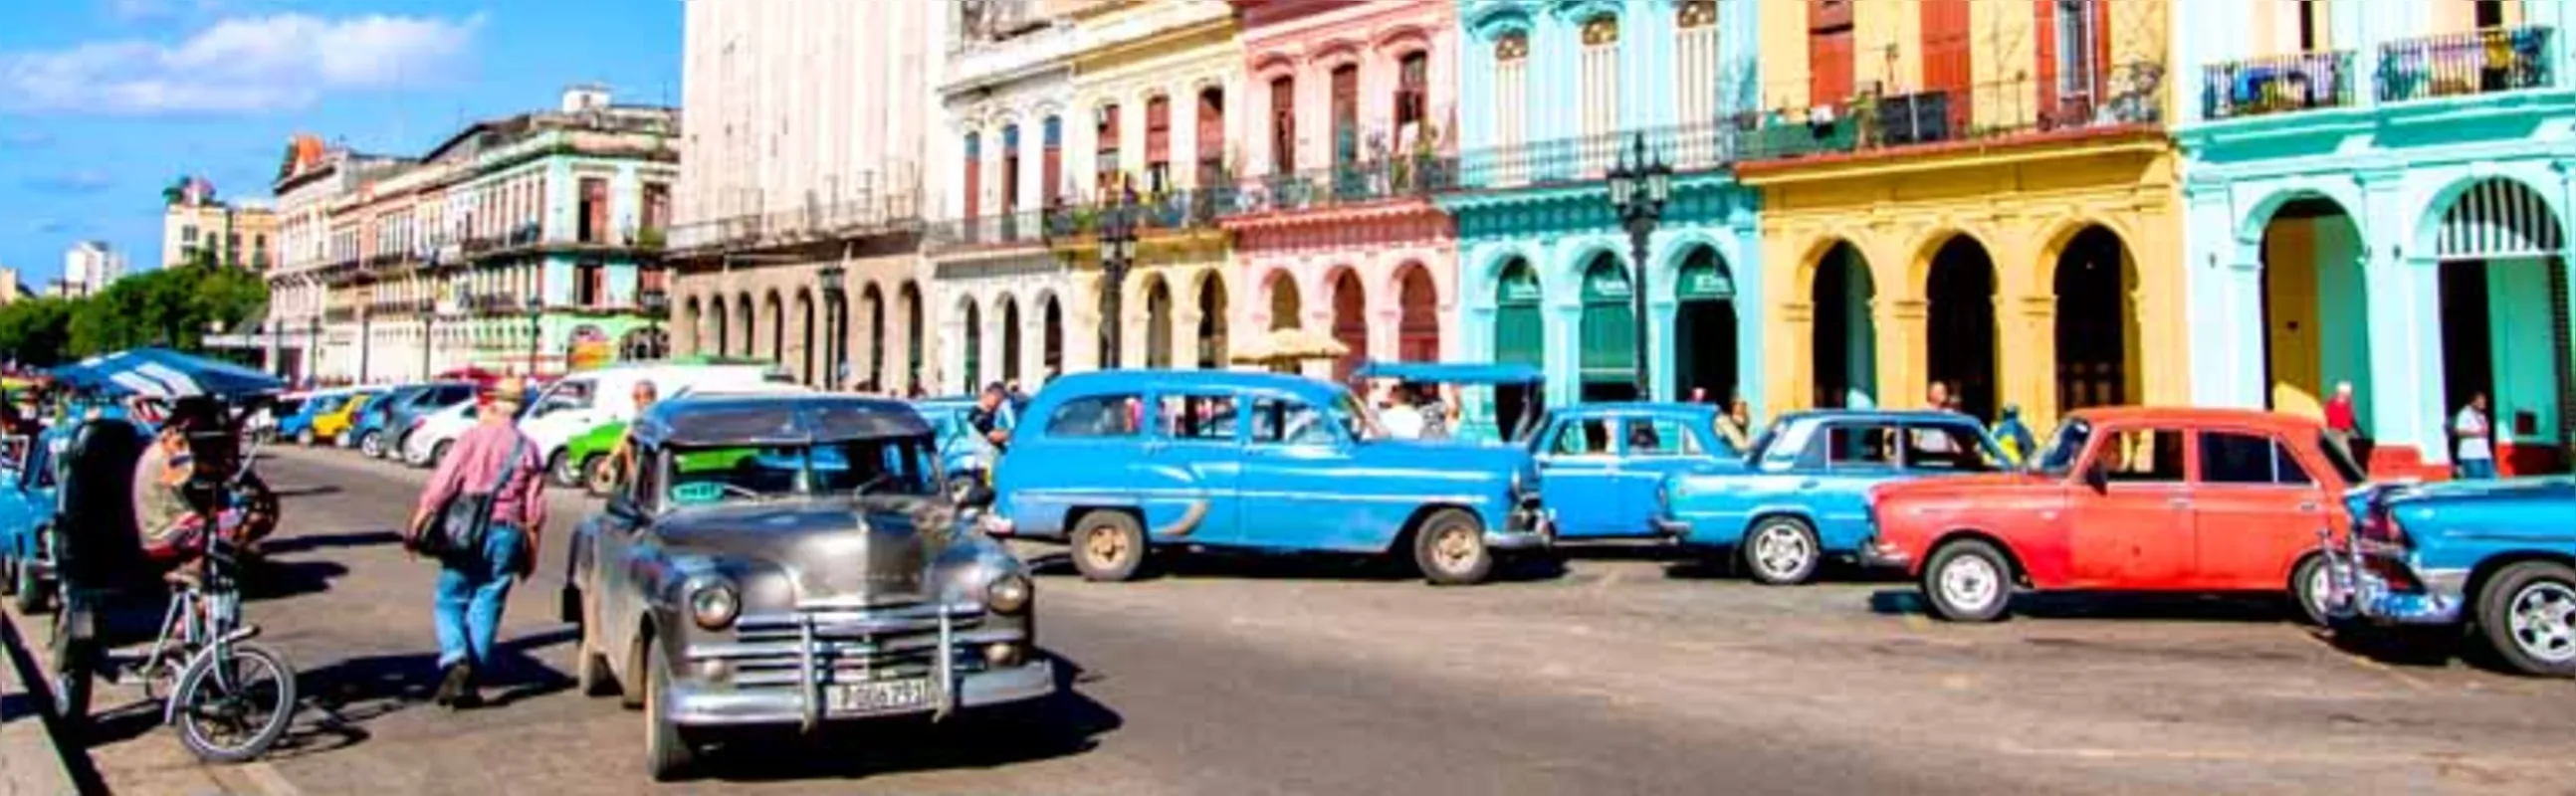 A nostalgia de Havana, com seus prédios e carros dos anos 50, faz parte do imaginário cultural do país que resistiu ao embargo econômico como um território de cores explosivas